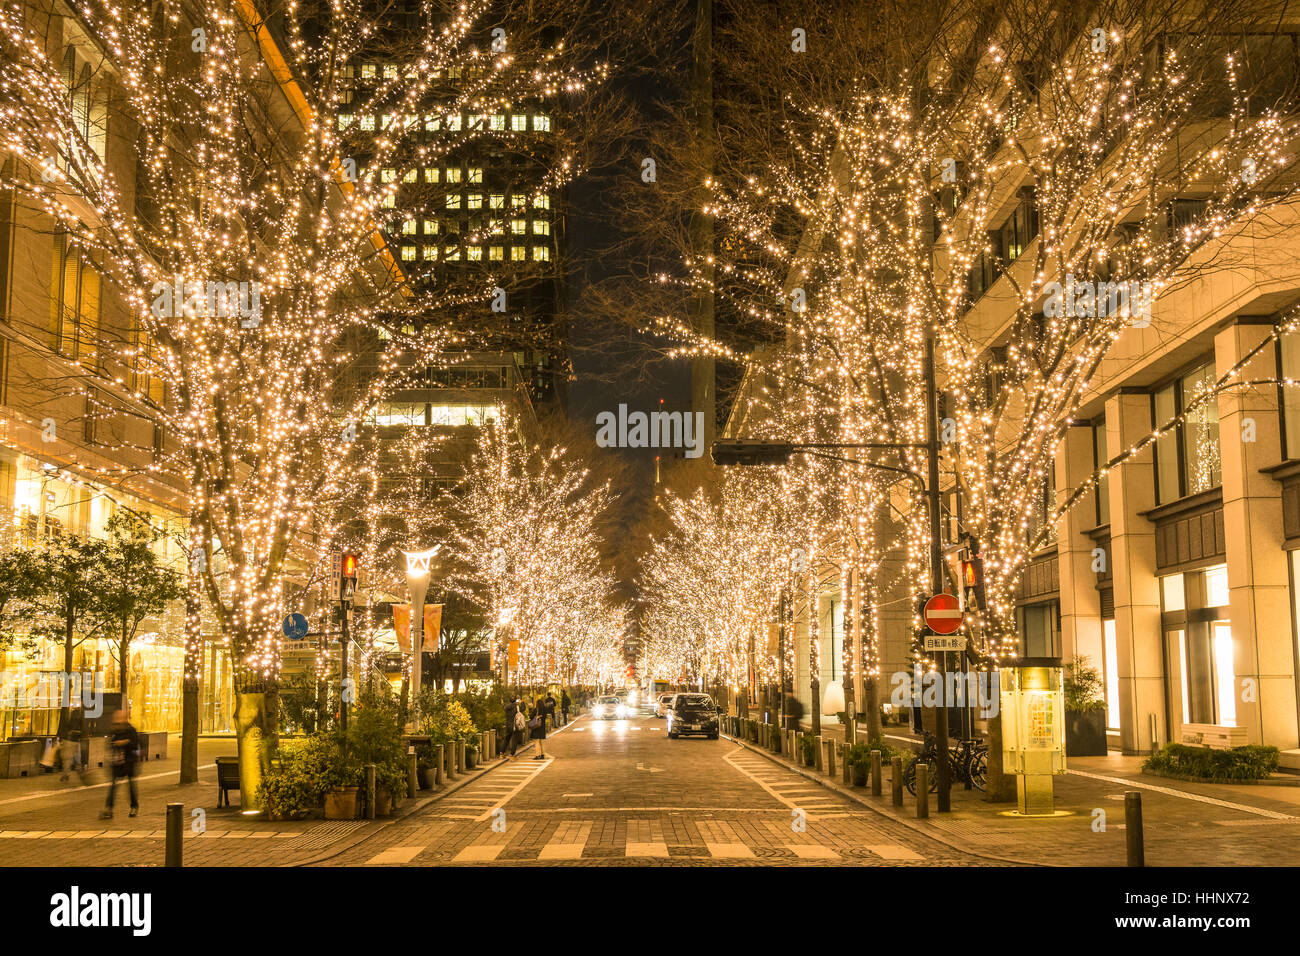 Illuminations in Marunouchi, Tokyo, Japan Stock Photo